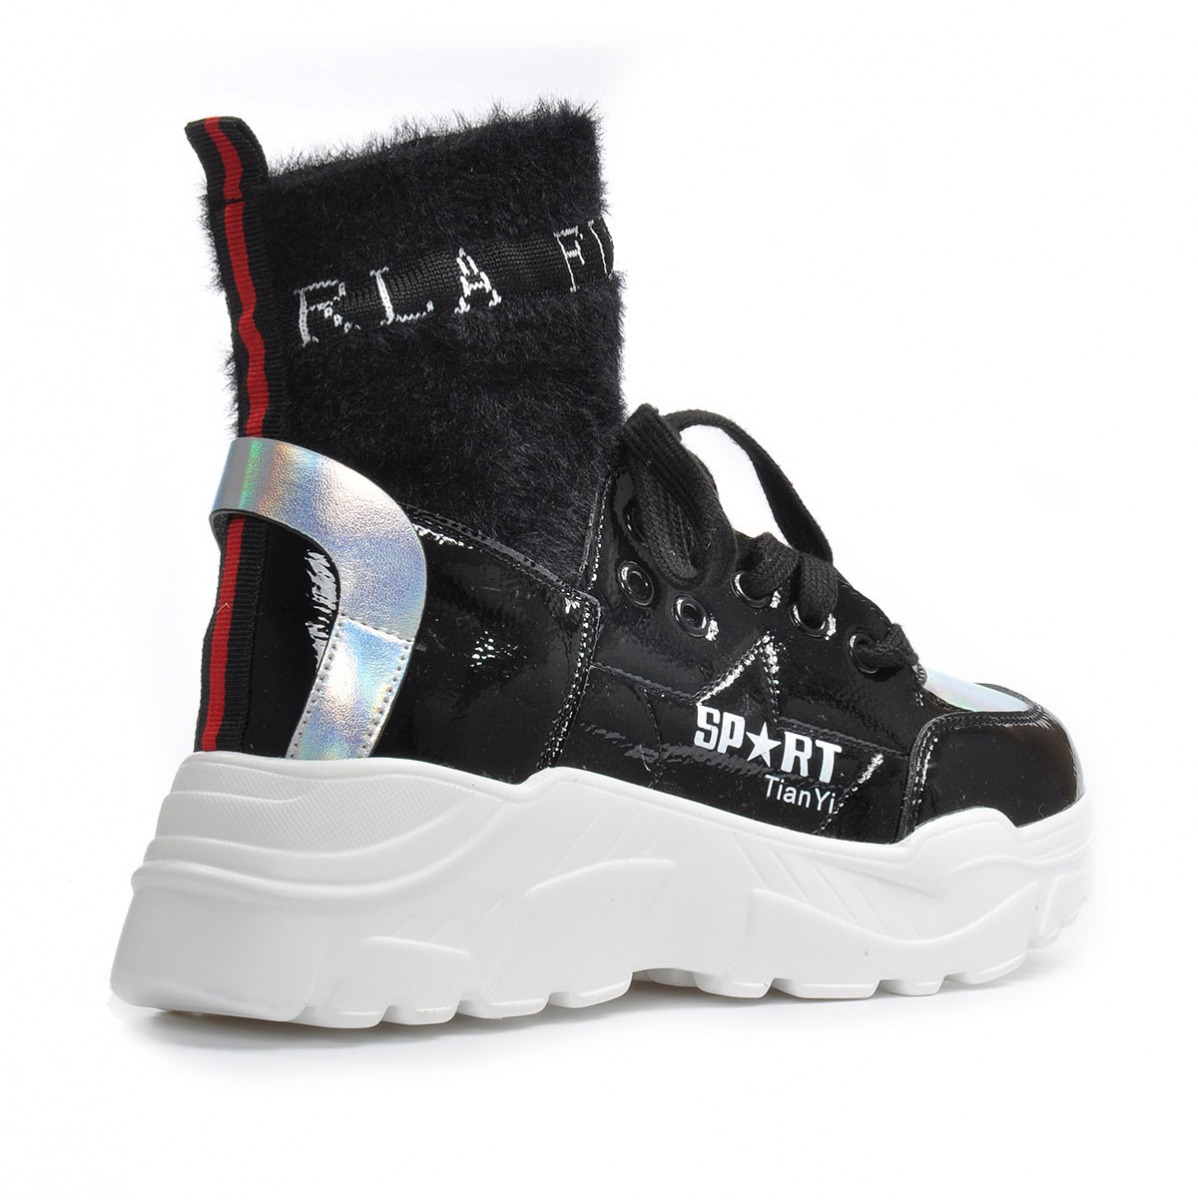 Flo Kadın Siyah Spor Sneaker Ayakkabı VZN19-084K. 6